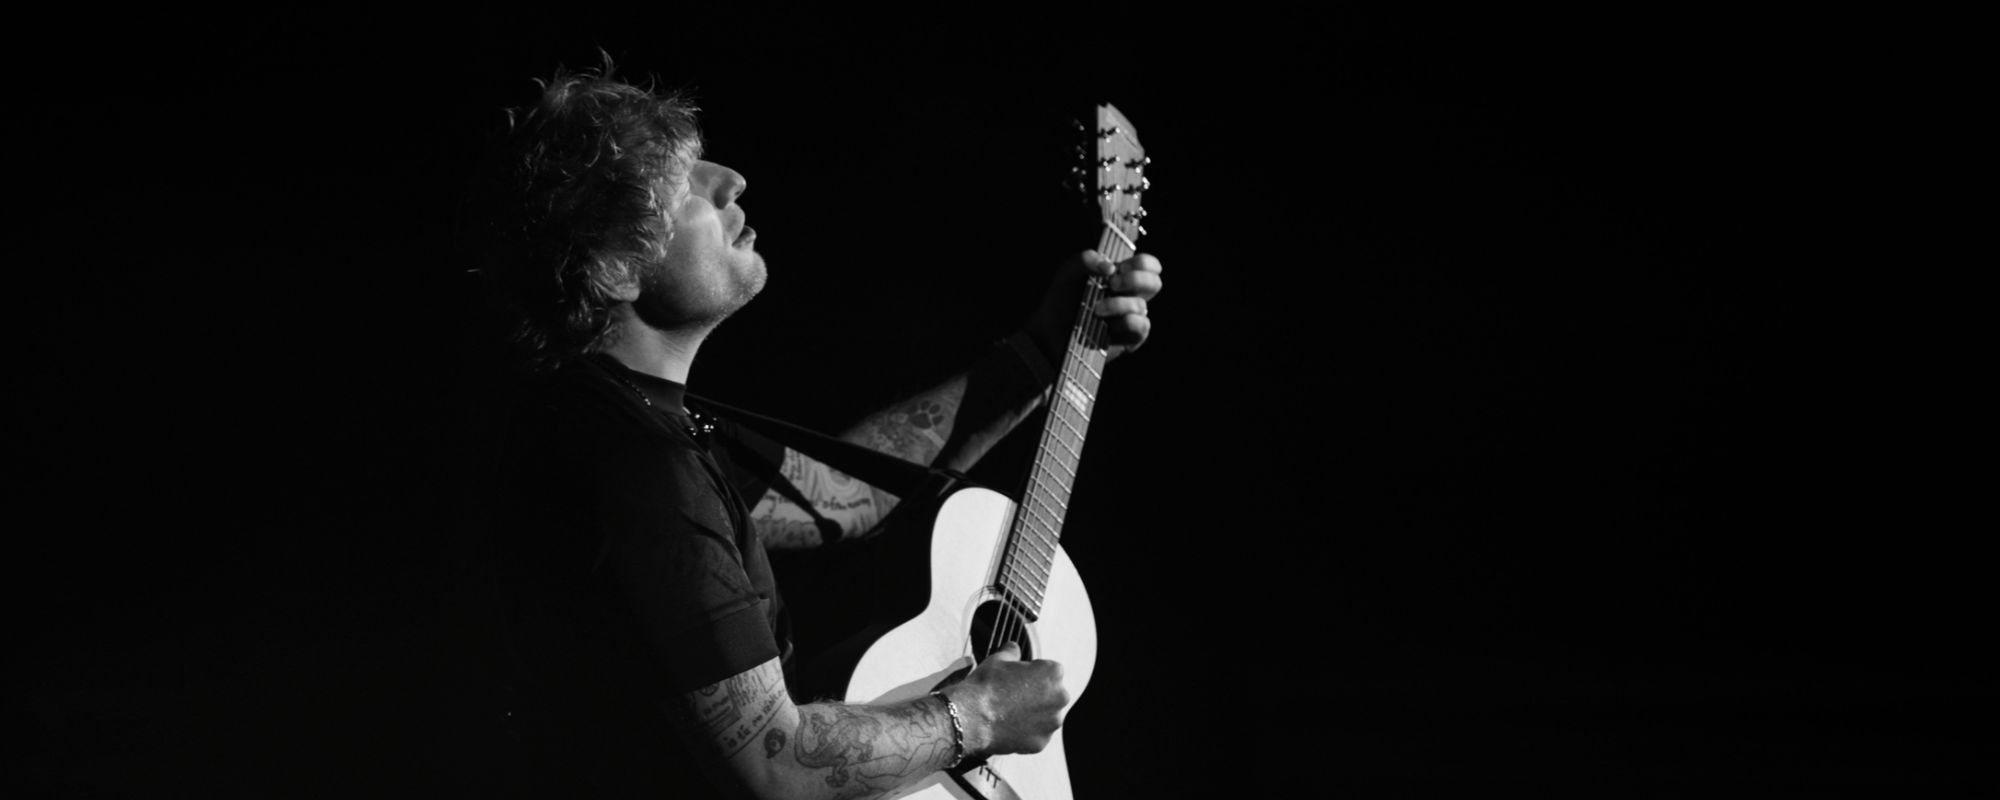 Review: Ed Sheeran Shines at Intimate Show at Nashville’s Ryman Auditorium